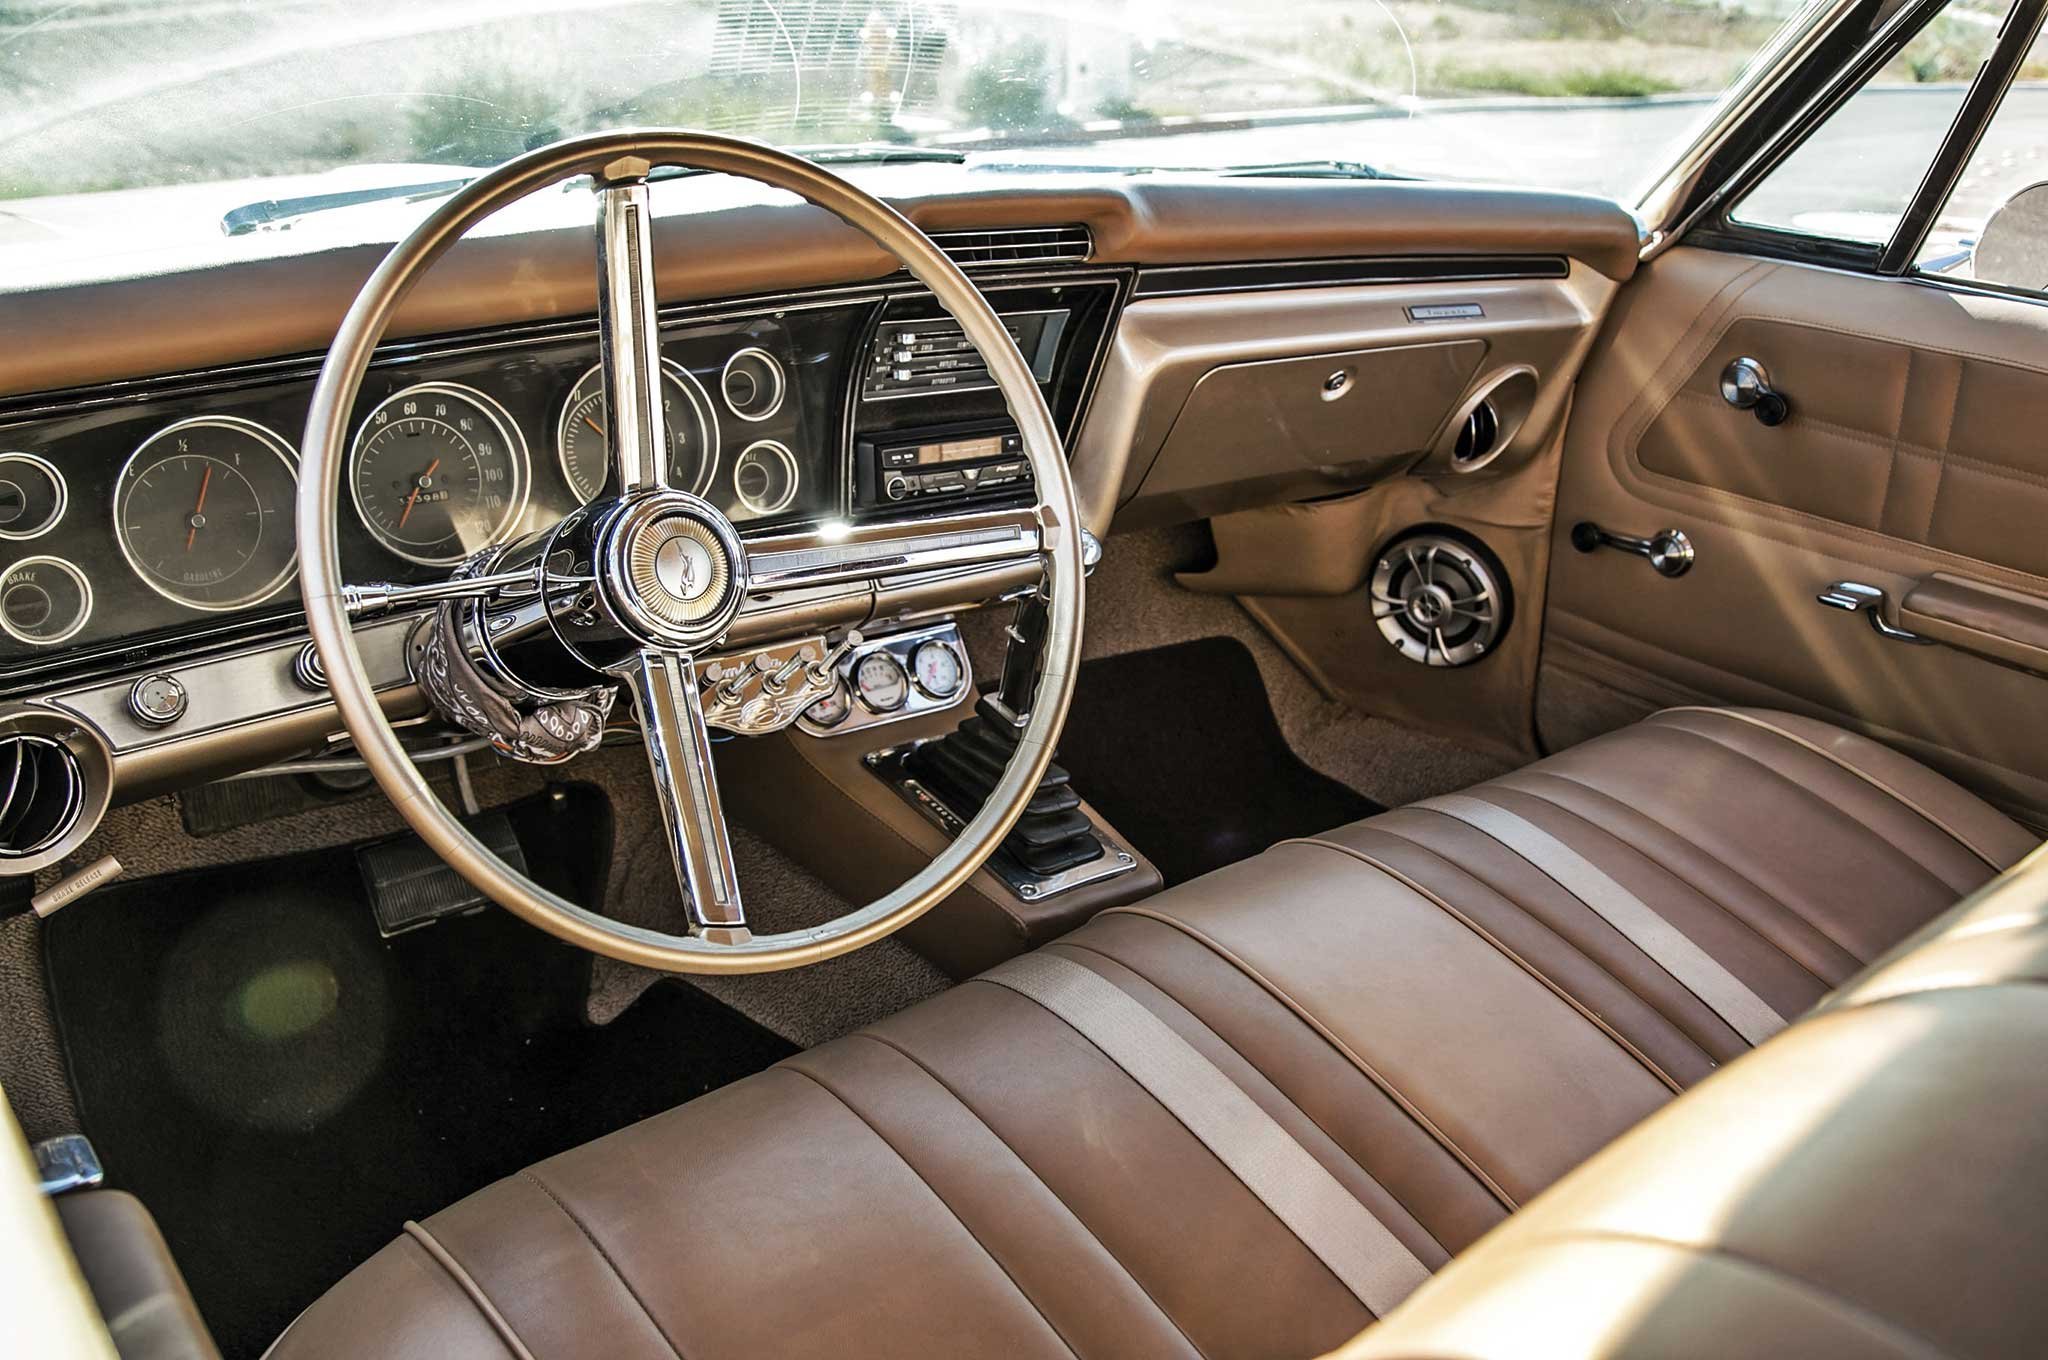 Chevrolet Impala 1967 - нестареющая классика! 5 Chevrolet Impala 1967